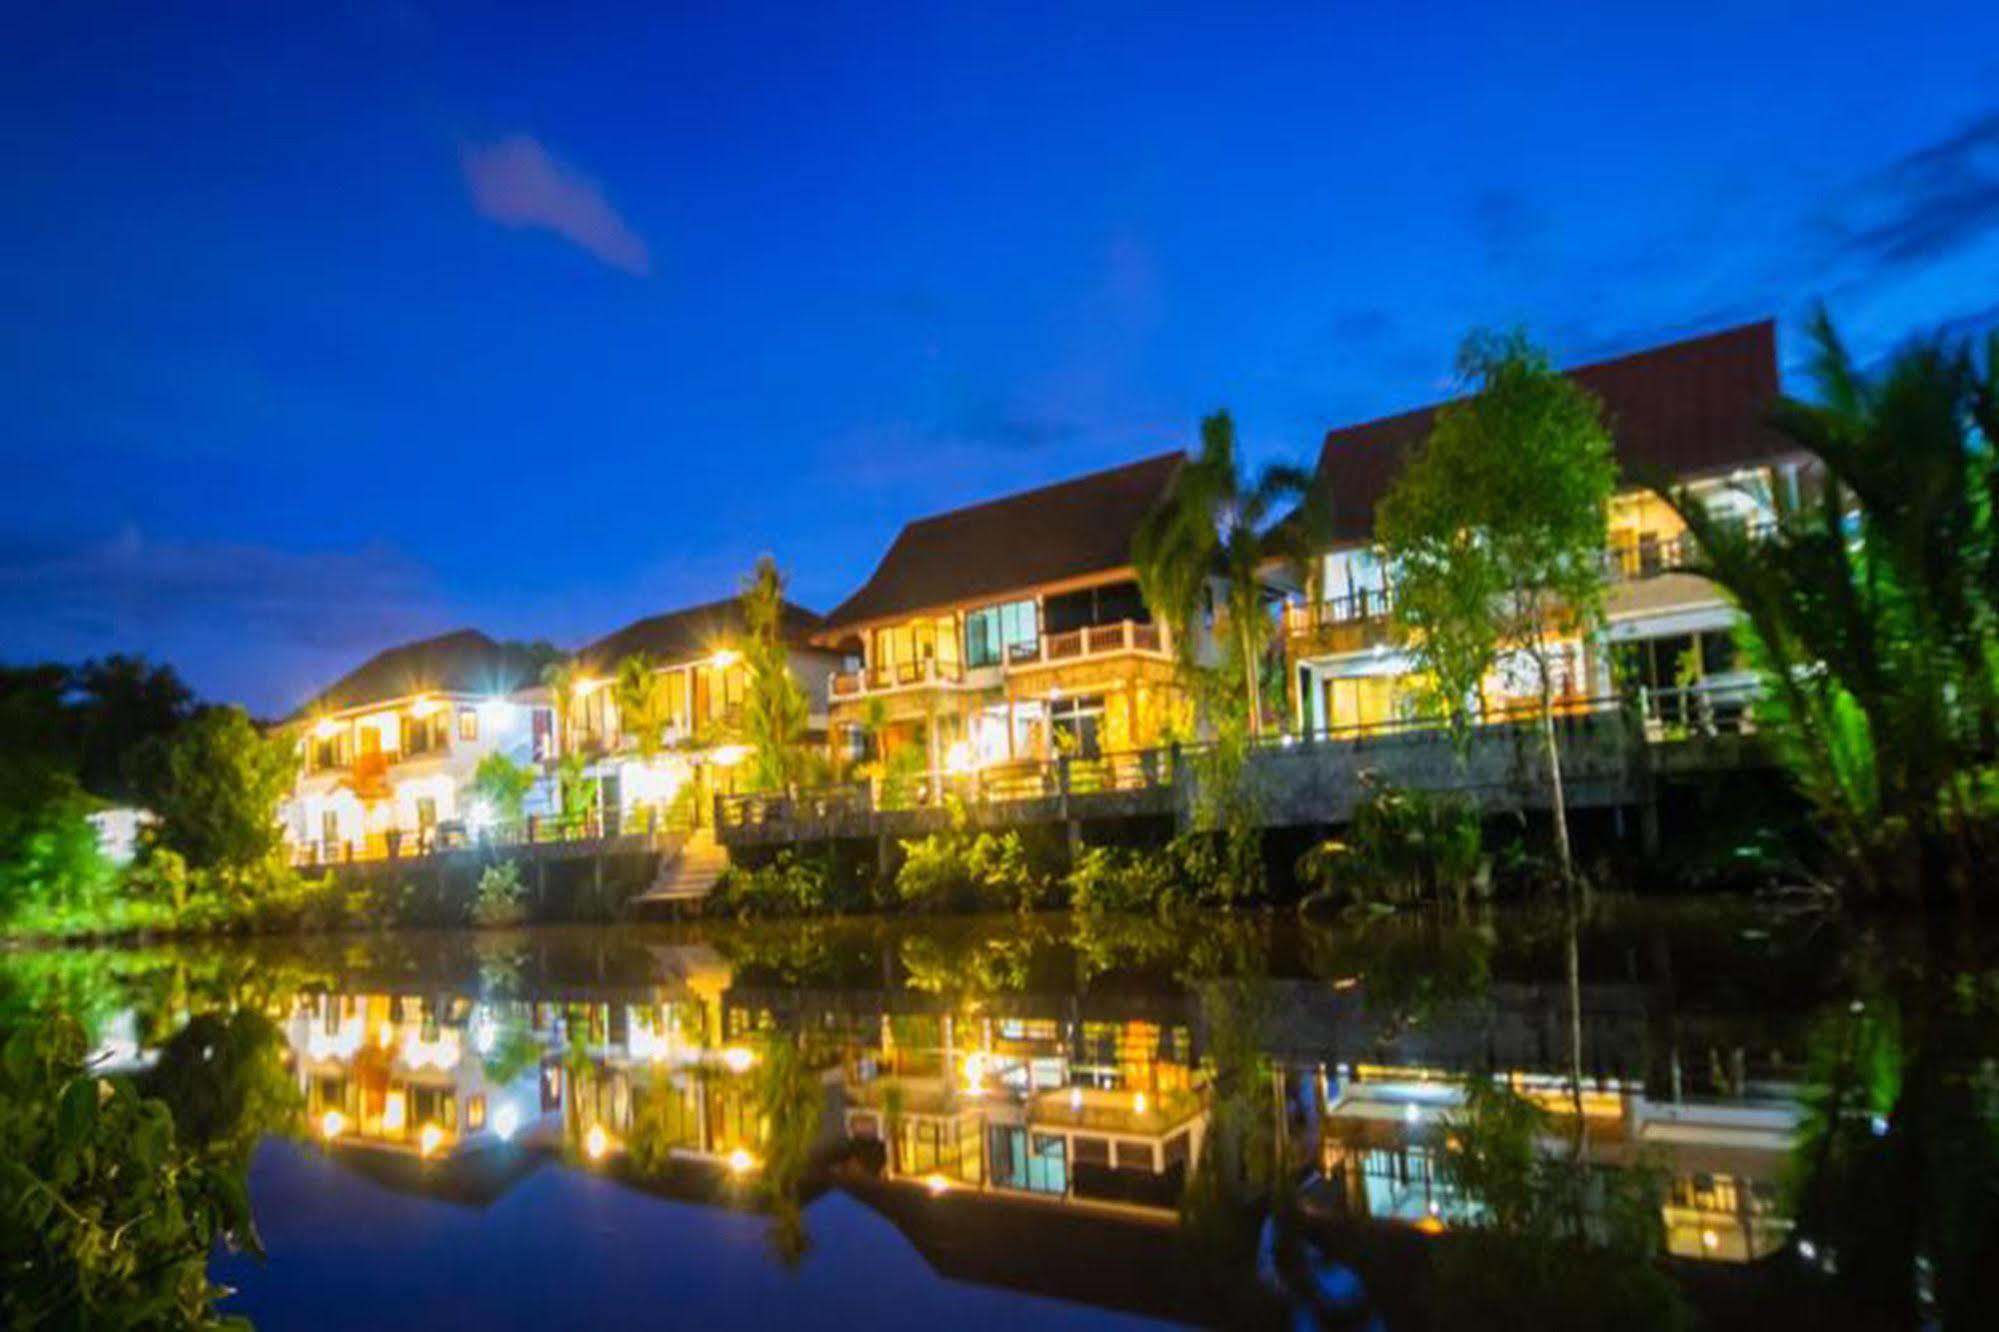 Baanrimnam Resort Trat Extérieur photo